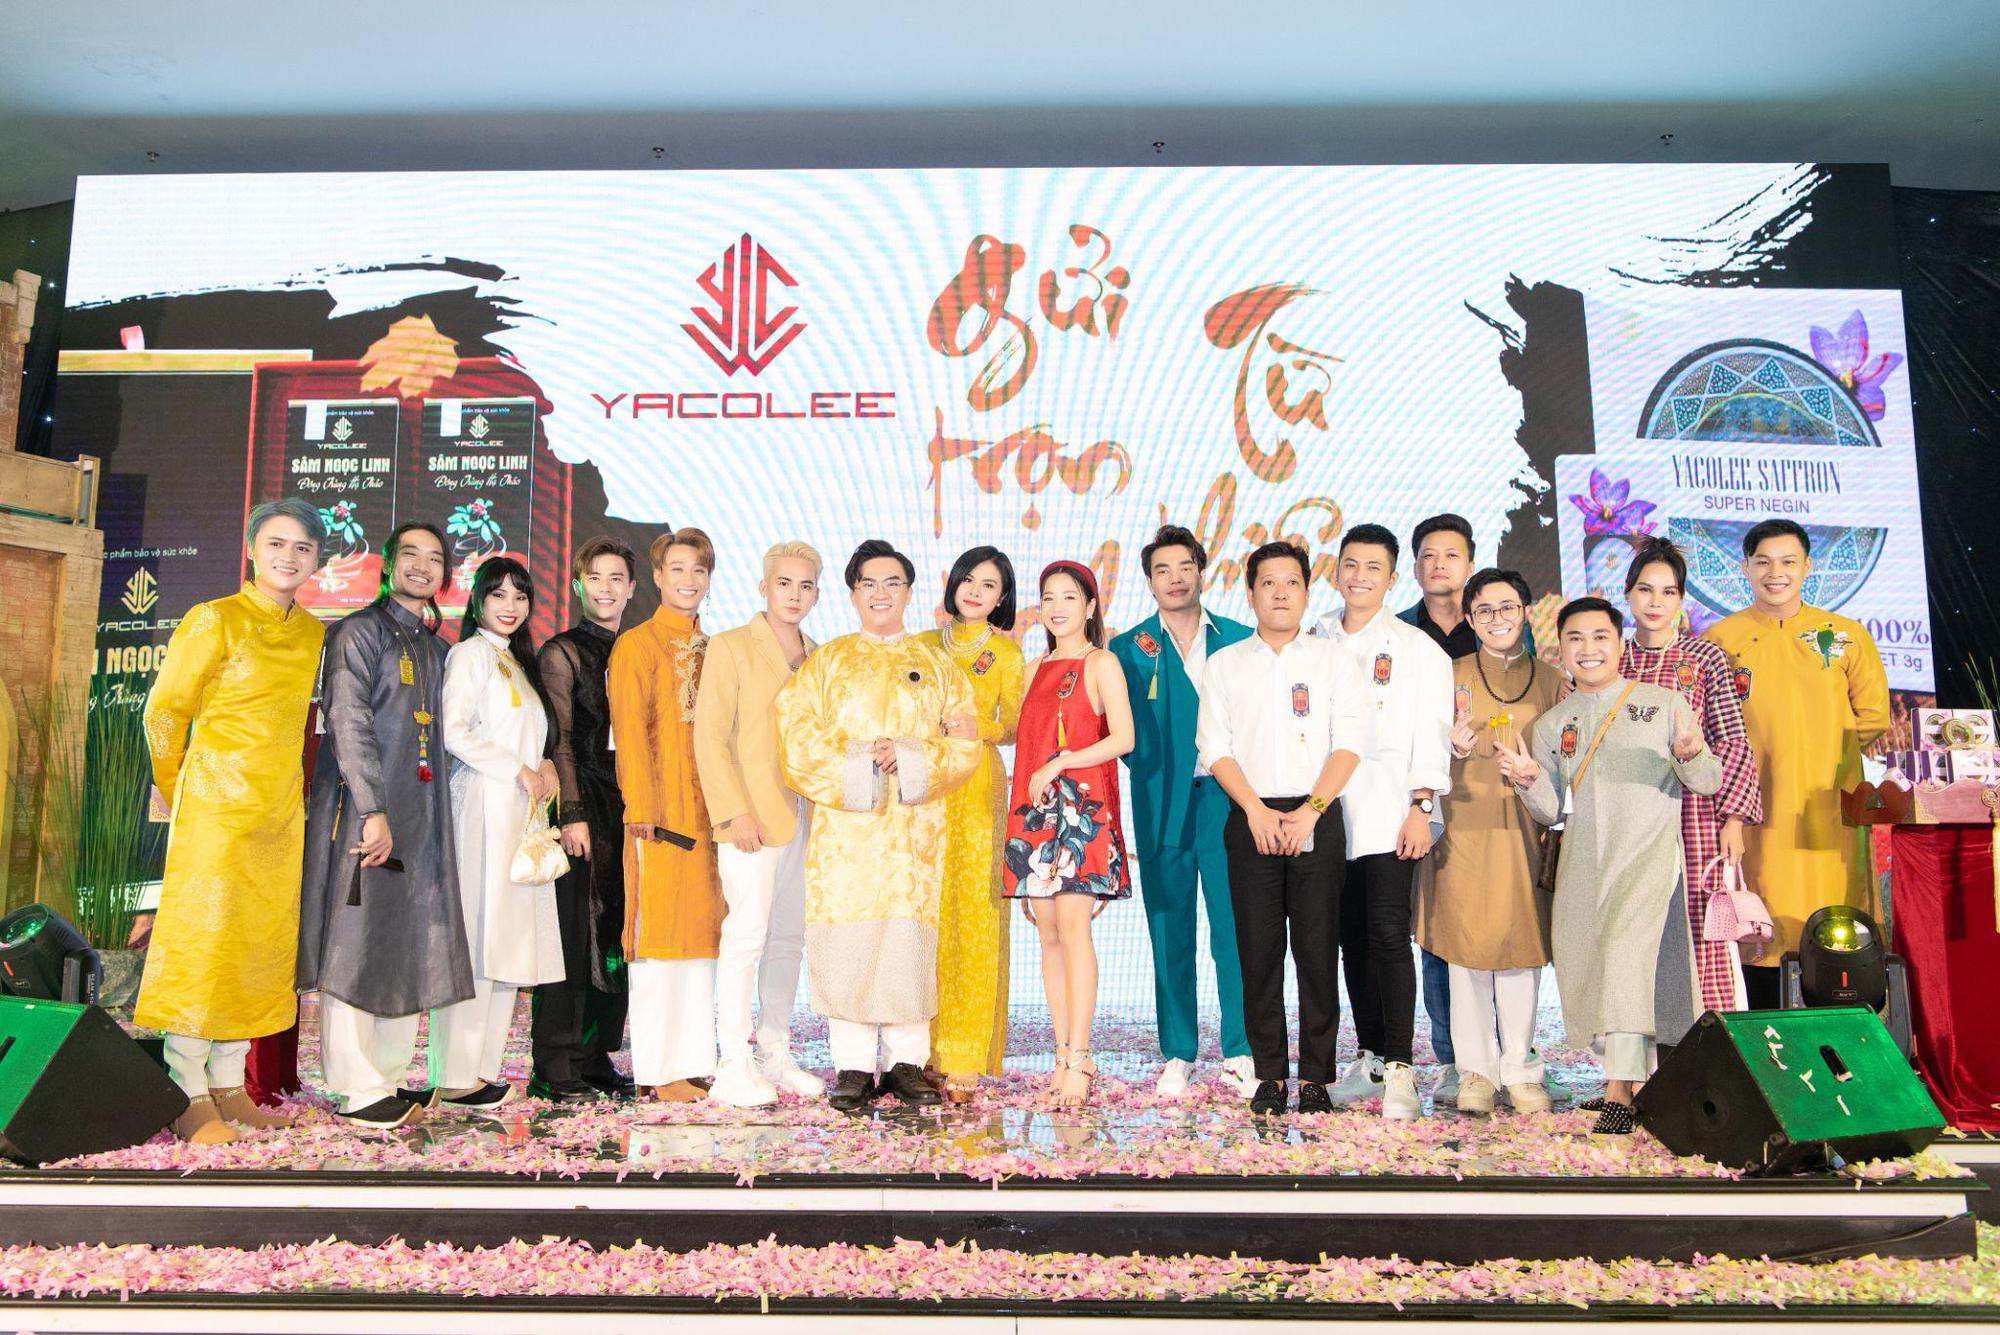 Trường Giang, Huỳnh Lập và dàn sao Việt ủng hộ Đại Nghĩa ra mắt thương hiệu Yacolee - Ảnh 1.